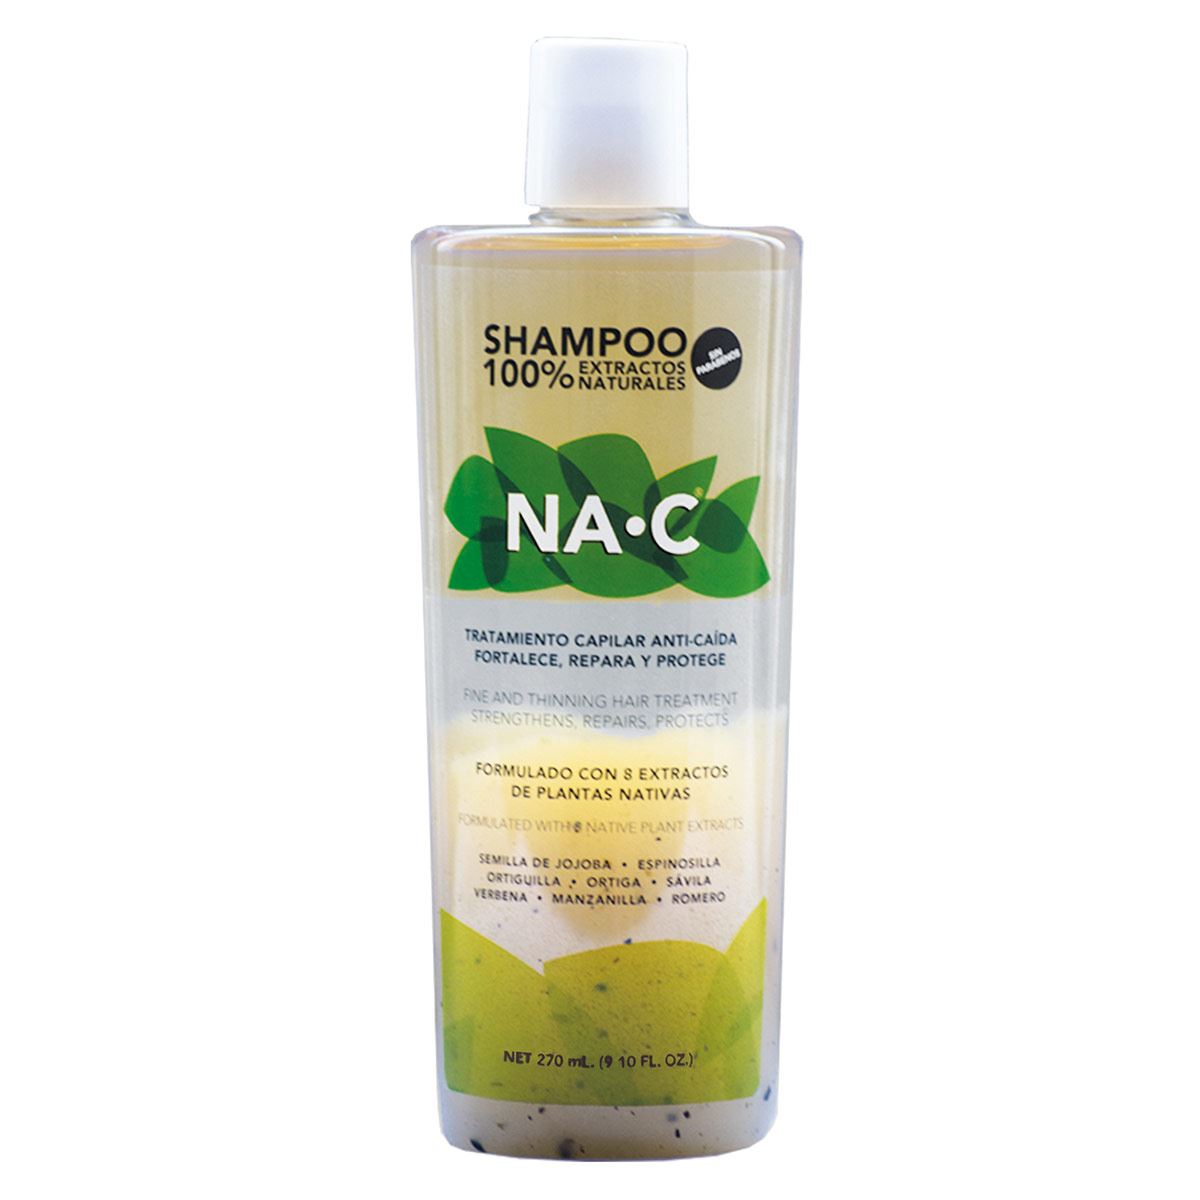 Shampoo na-c 270 ml